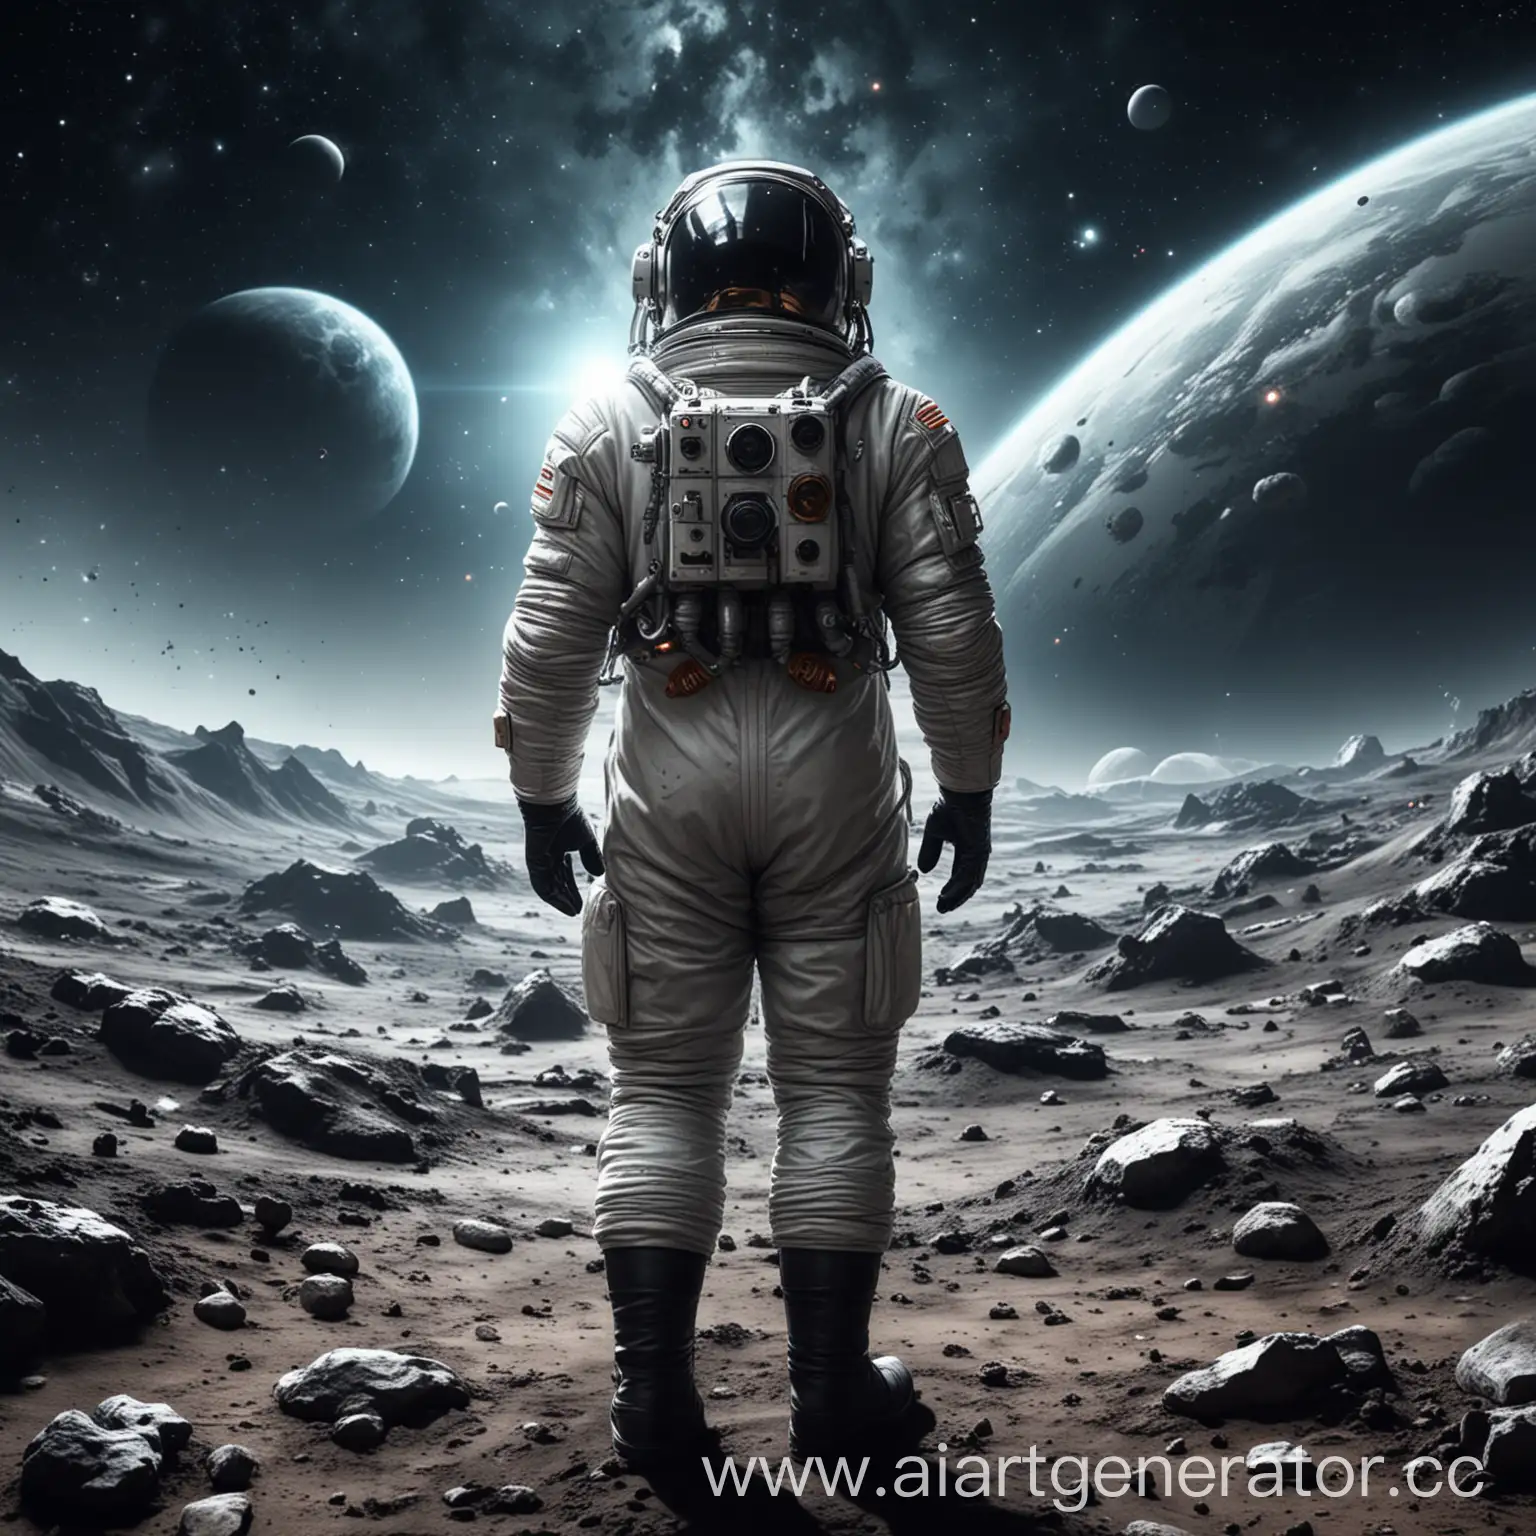 Обложка игра на космическую тематику, космонавт стоит спиной, перед ним космическая колония